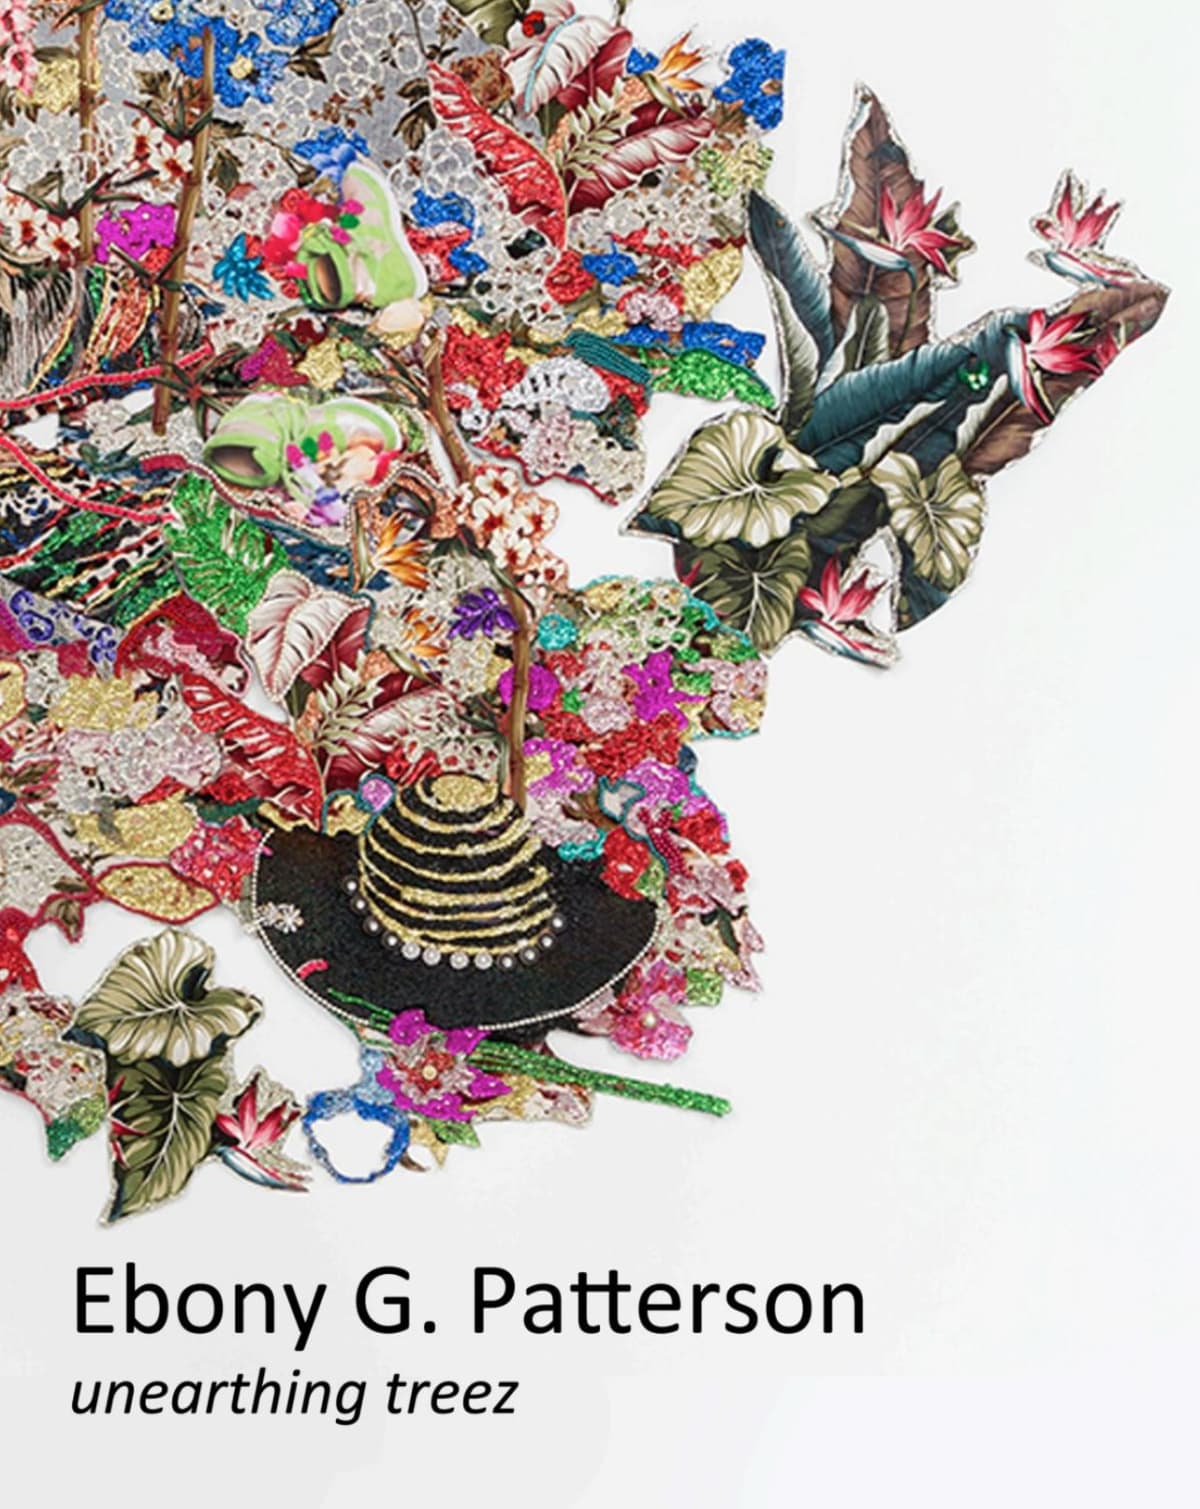 Ebony G. Patterson: unearthing treez